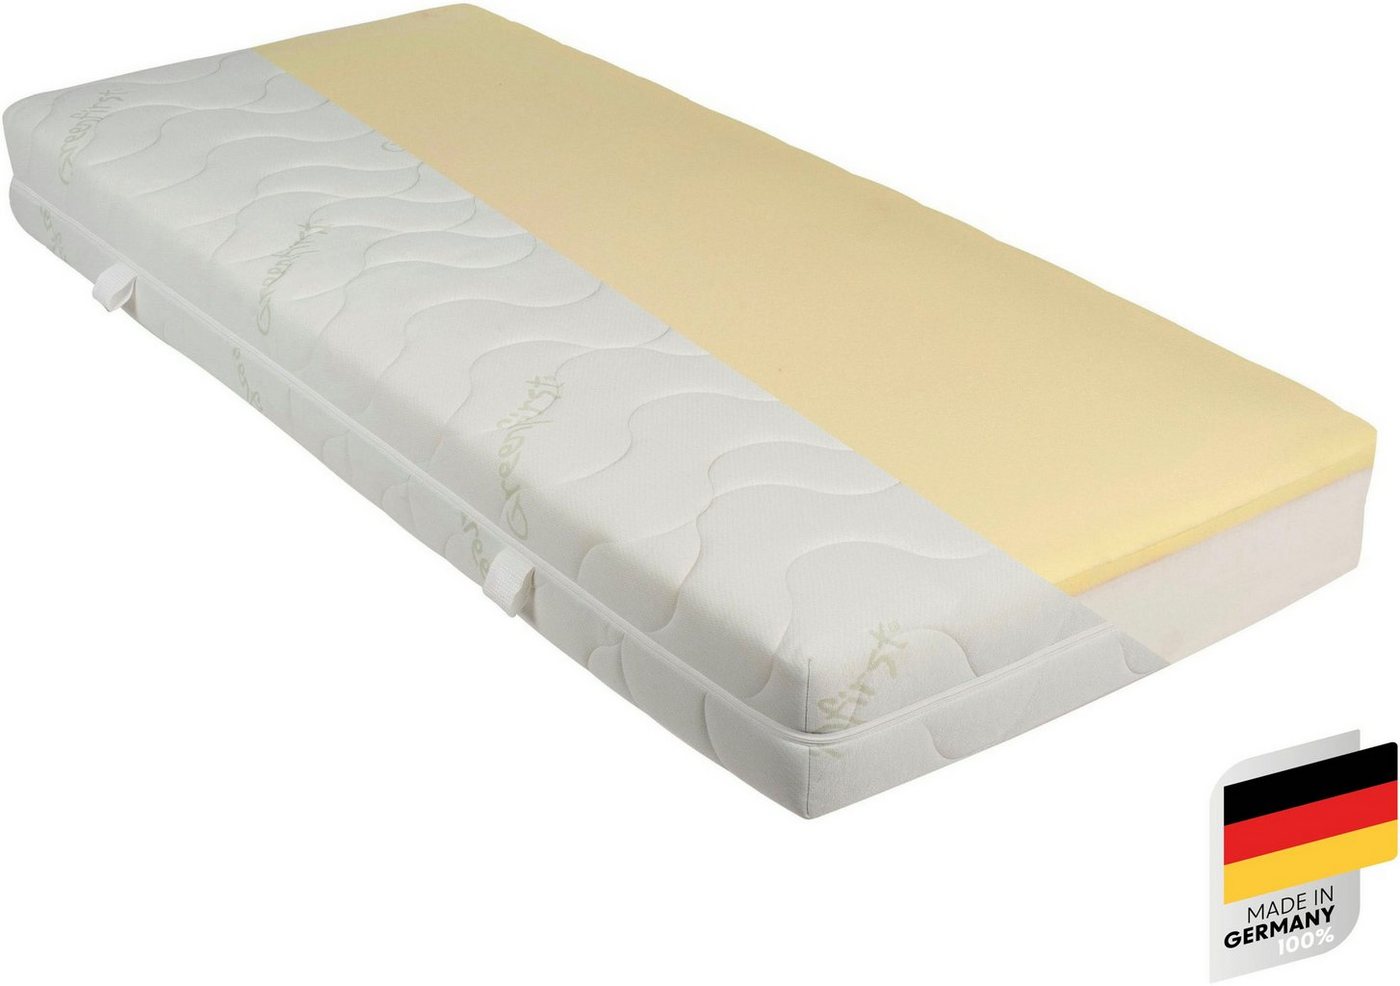 Taschenfederkernmatratze GUMO TFK, Beco, 22 cm hoch, komfortable Matratze in 90x200, 140x200 cm und weiteren Größen von Beco